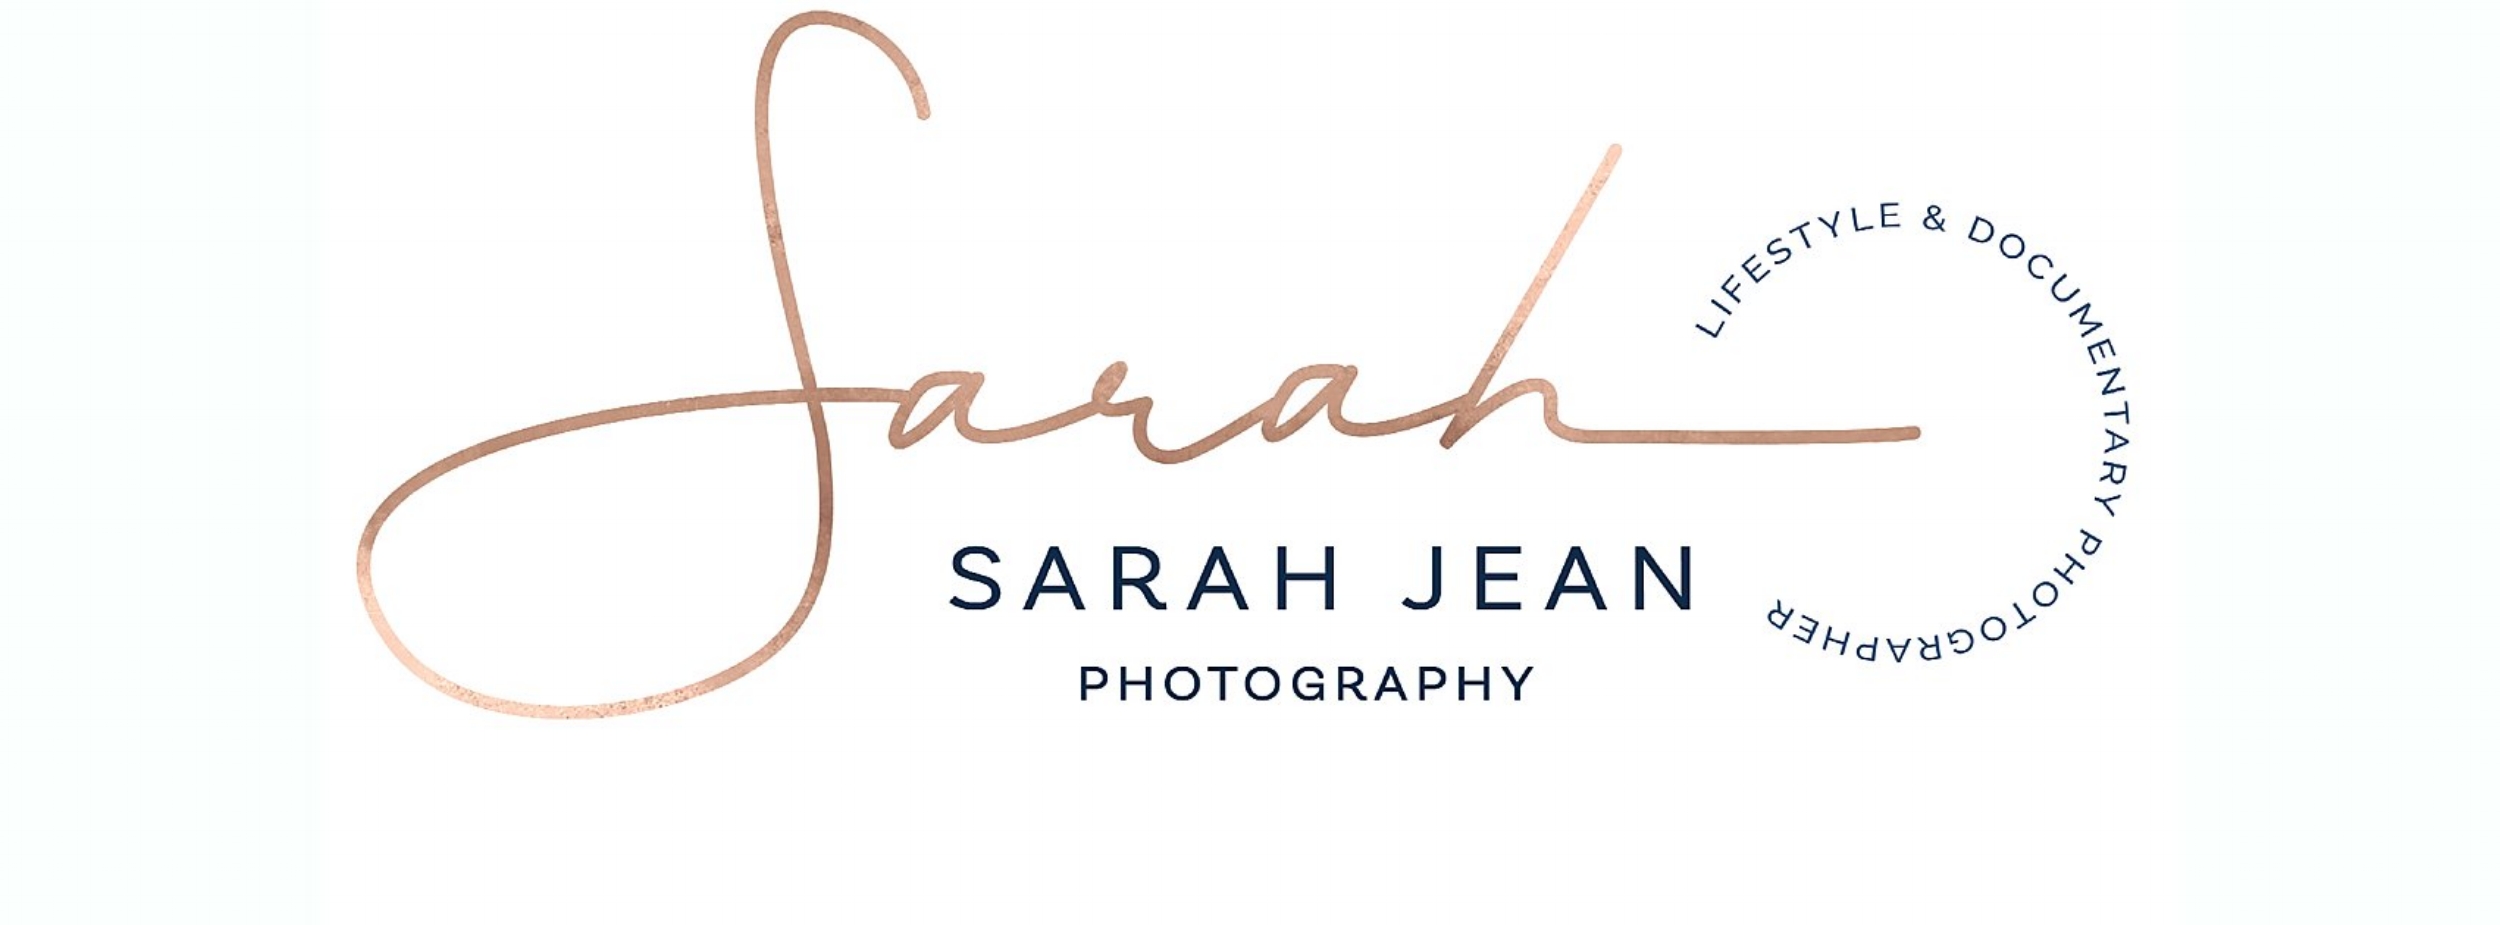 Sarah Jean Photography